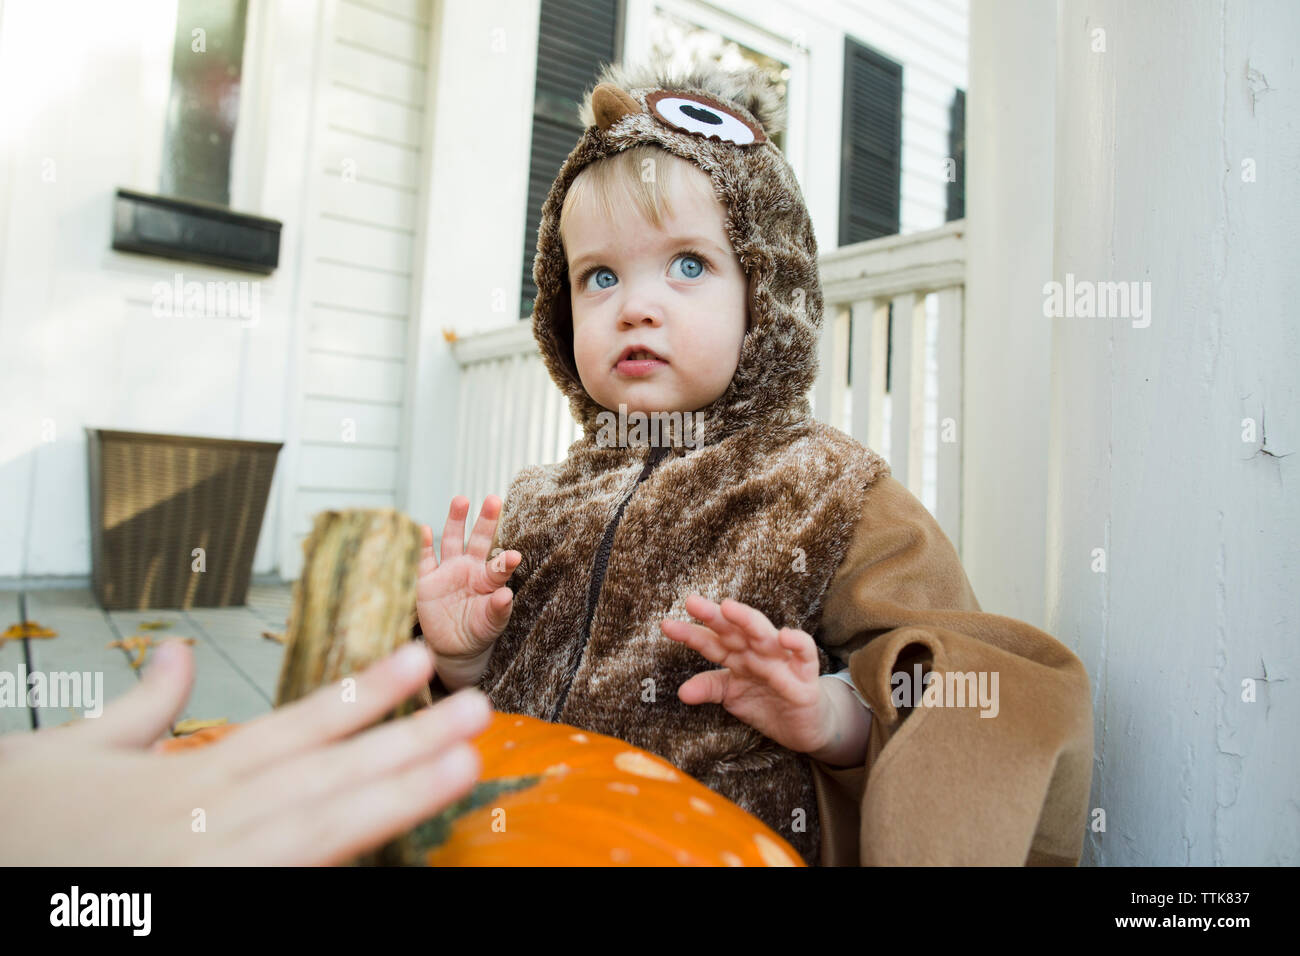 Bébé garçon ressemble à distance pendant qu'habillés en costume Halloween Banque D'Images